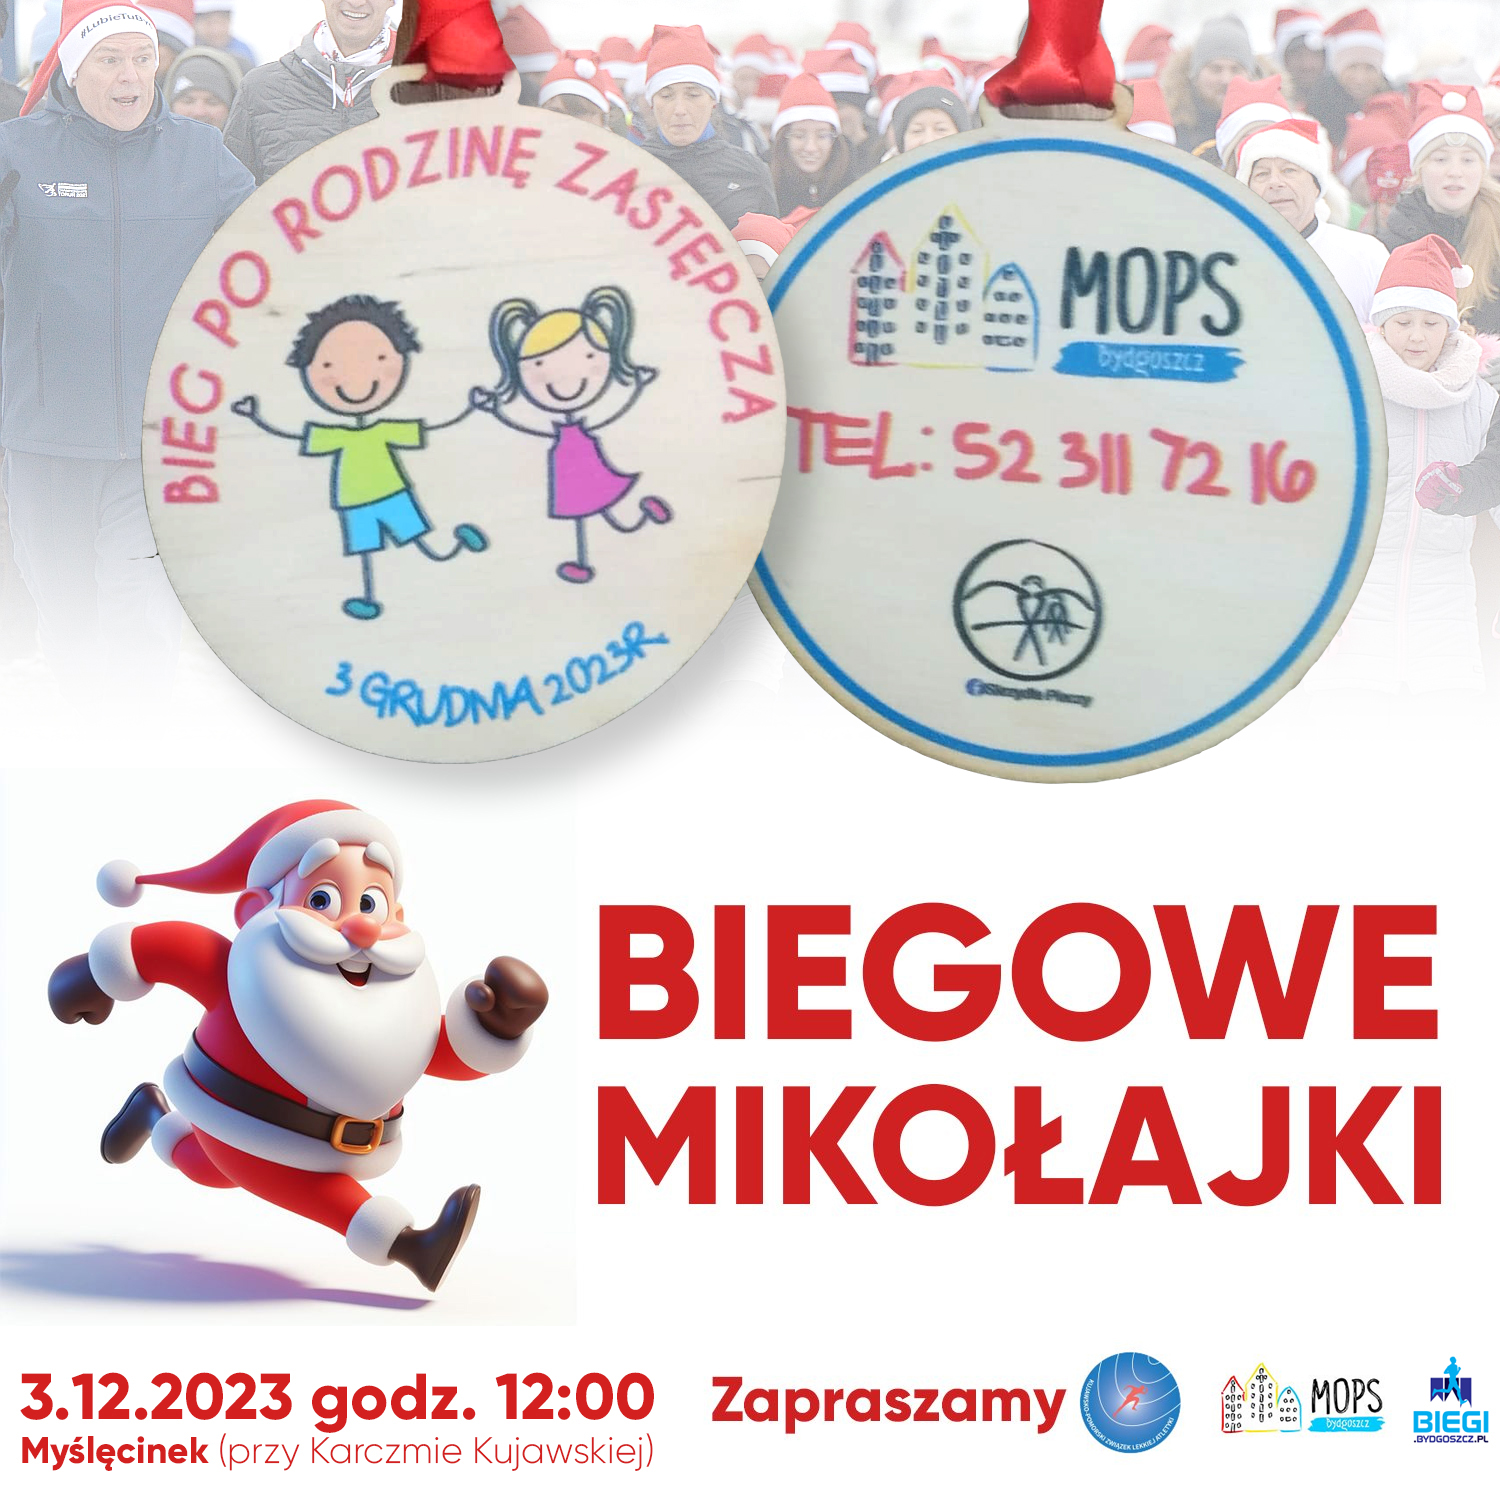 Medale Biegu po Rodzinę na plakacie informacyjnym Biegowych Mikołajek - 3.12.2023 r.